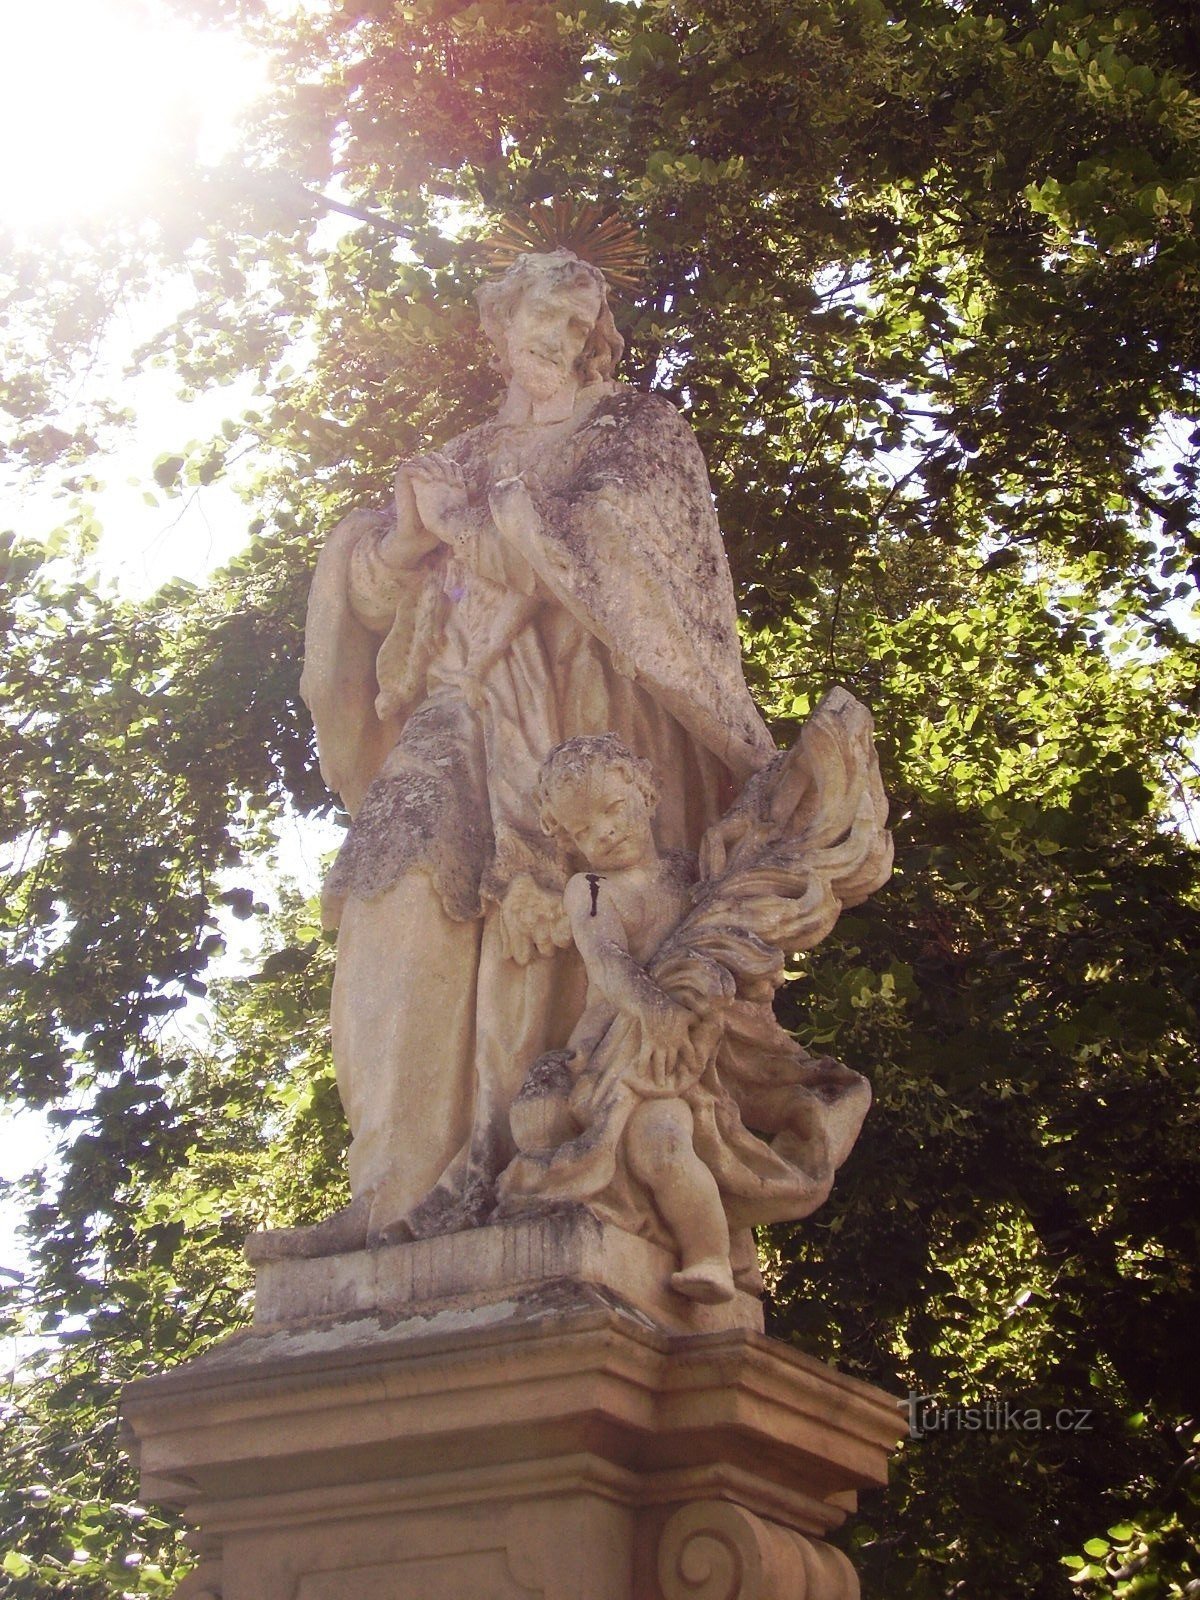 St. John's statues in Dolní Kounice